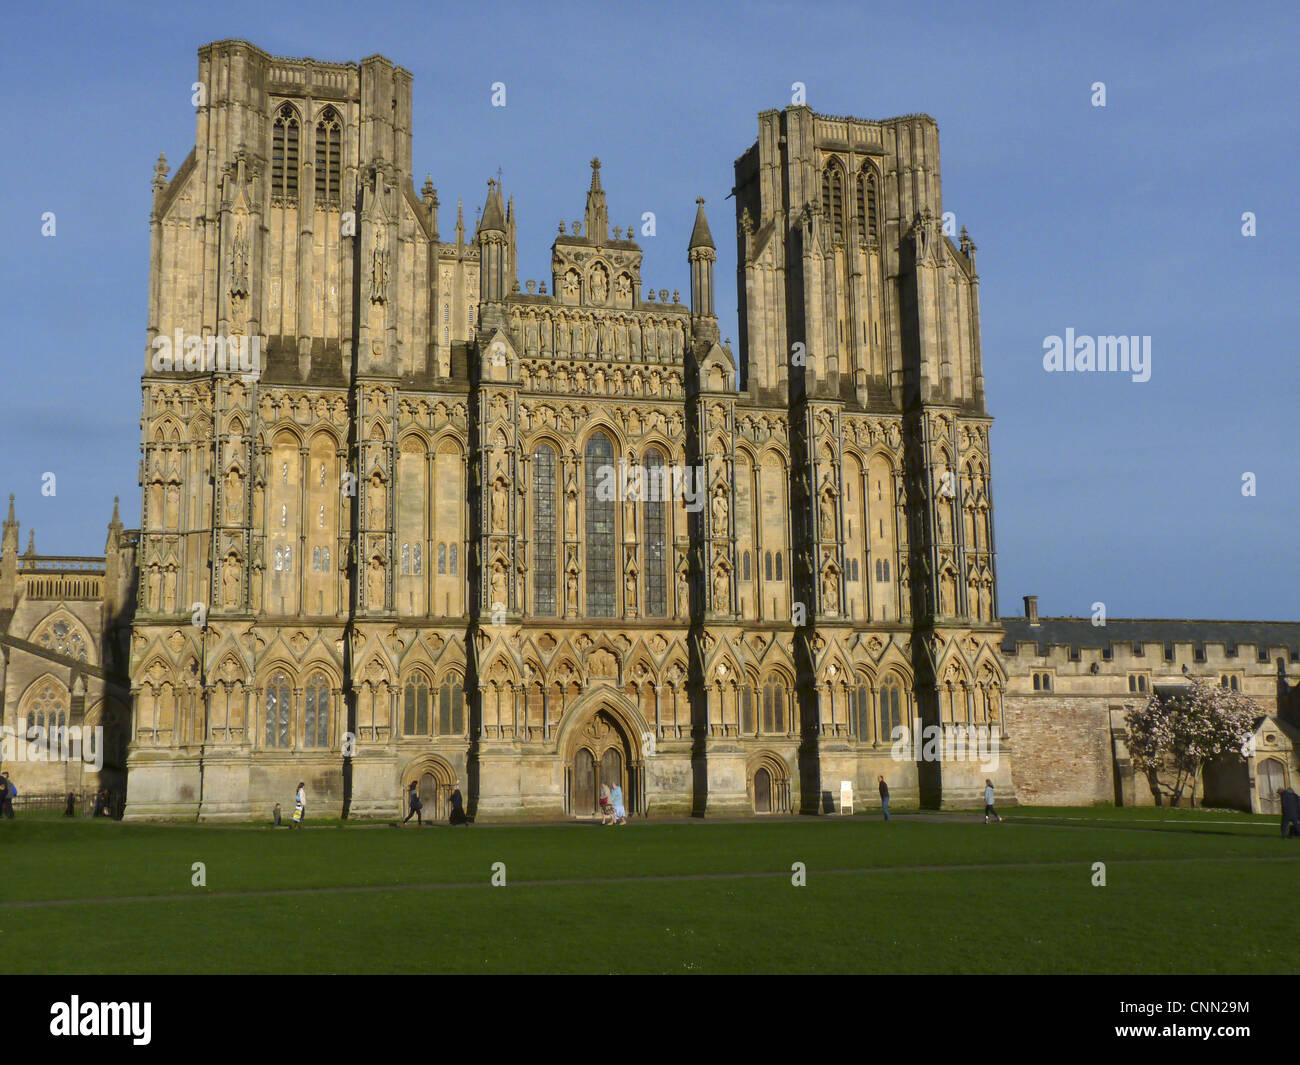 West front elevation of cathédrale médiévale, la cathédrale de Wells, Wells, Somerset, Angleterre, avril Banque D'Images